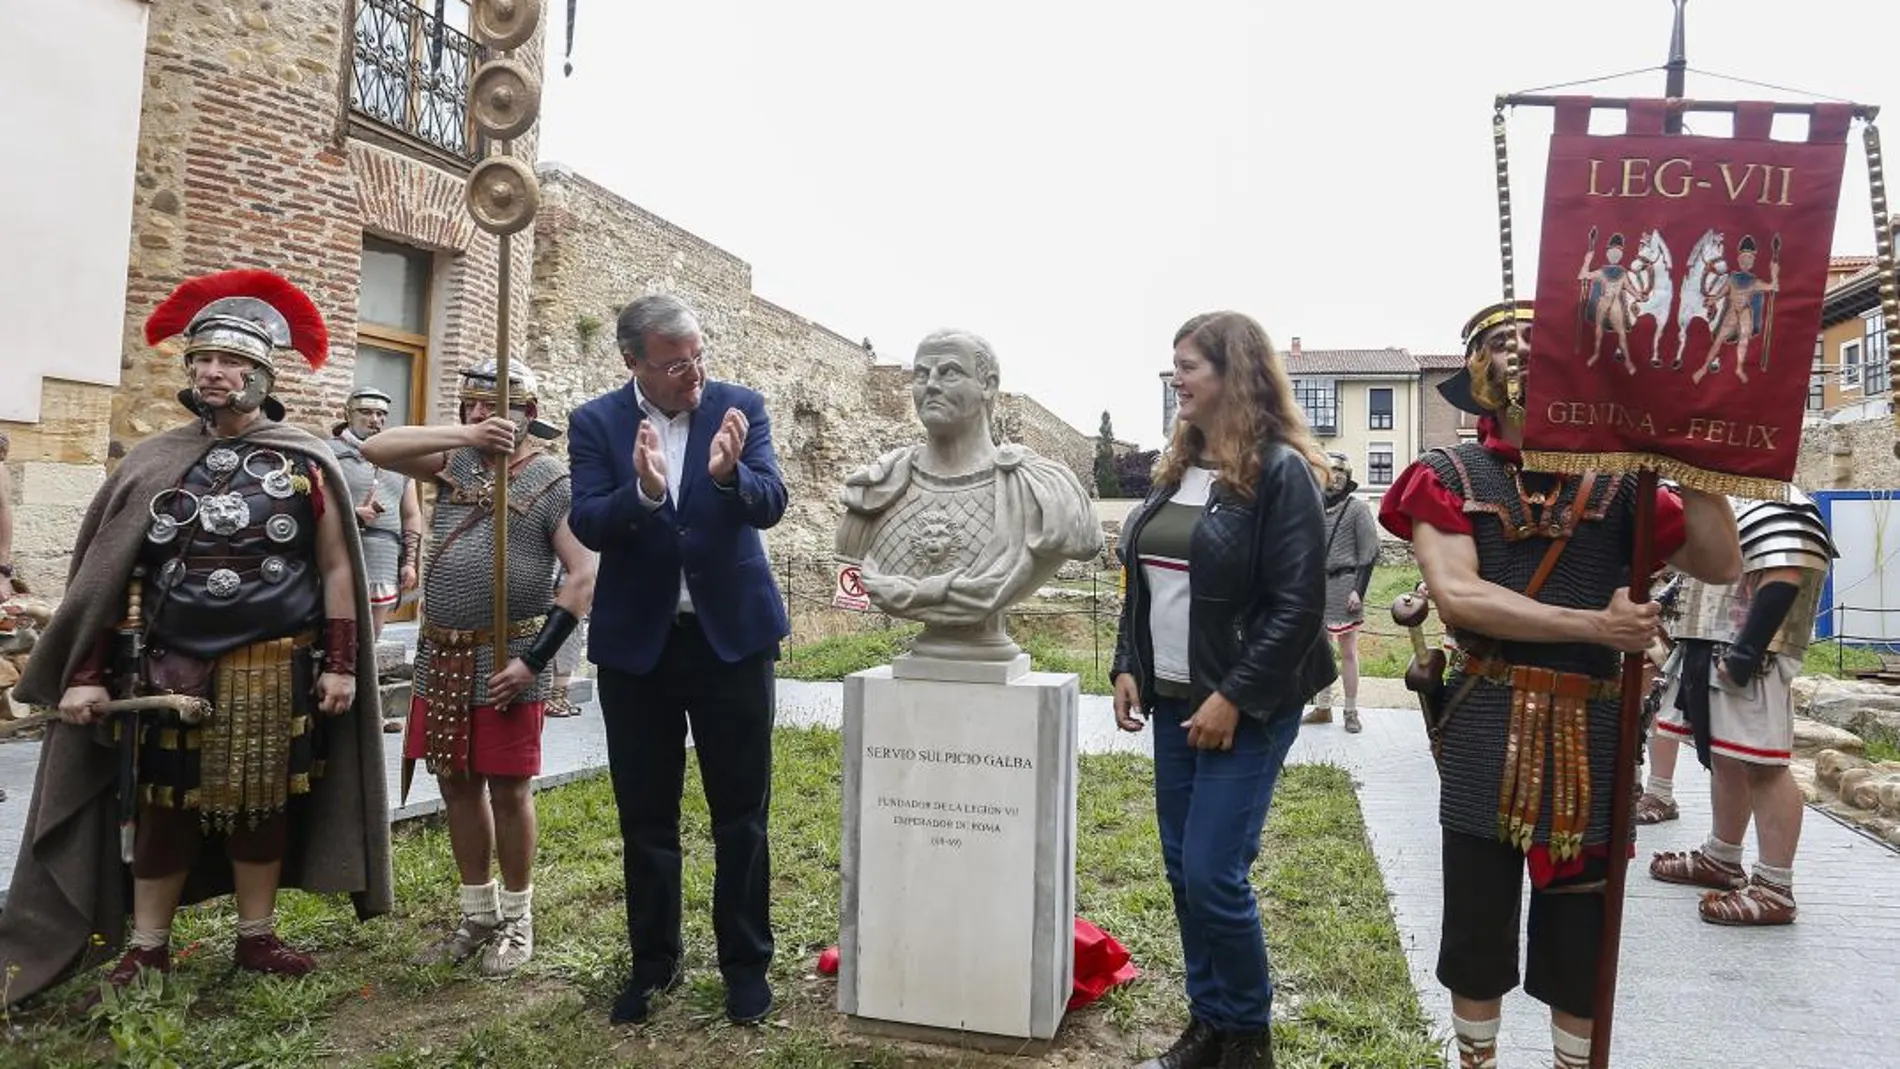 El alcalde de León, Antonio Silván, y la concejala Margarita Torres descubren el busto del emperador Galba